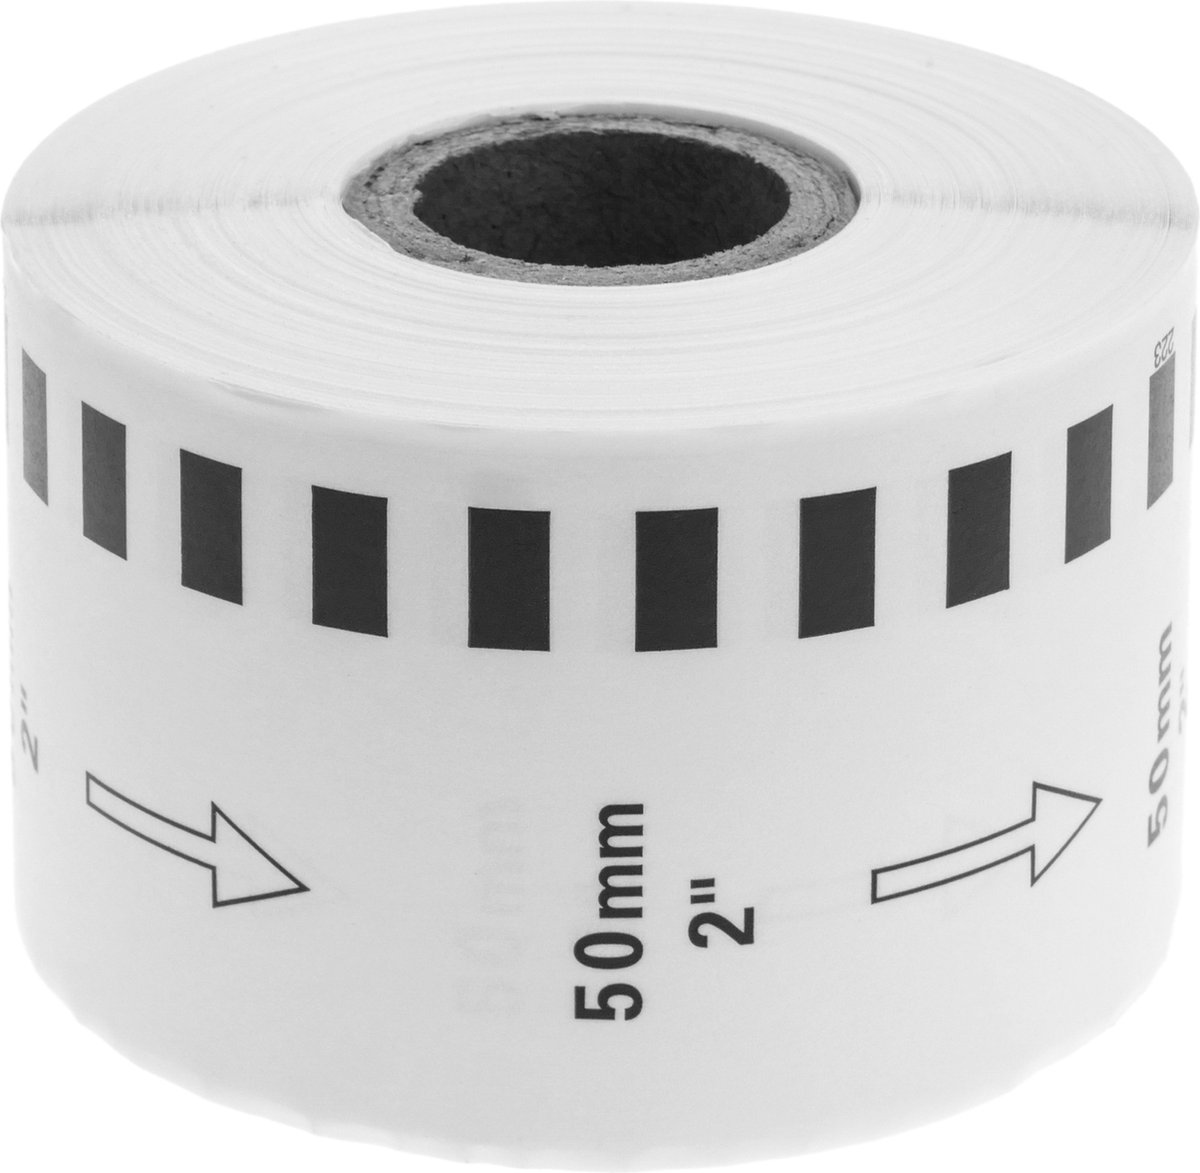 BeMatik - Rol zelfklevende etiketten compatibel met Brother DK-22223 breedte 50 mm lang. 30.48m 10-pack